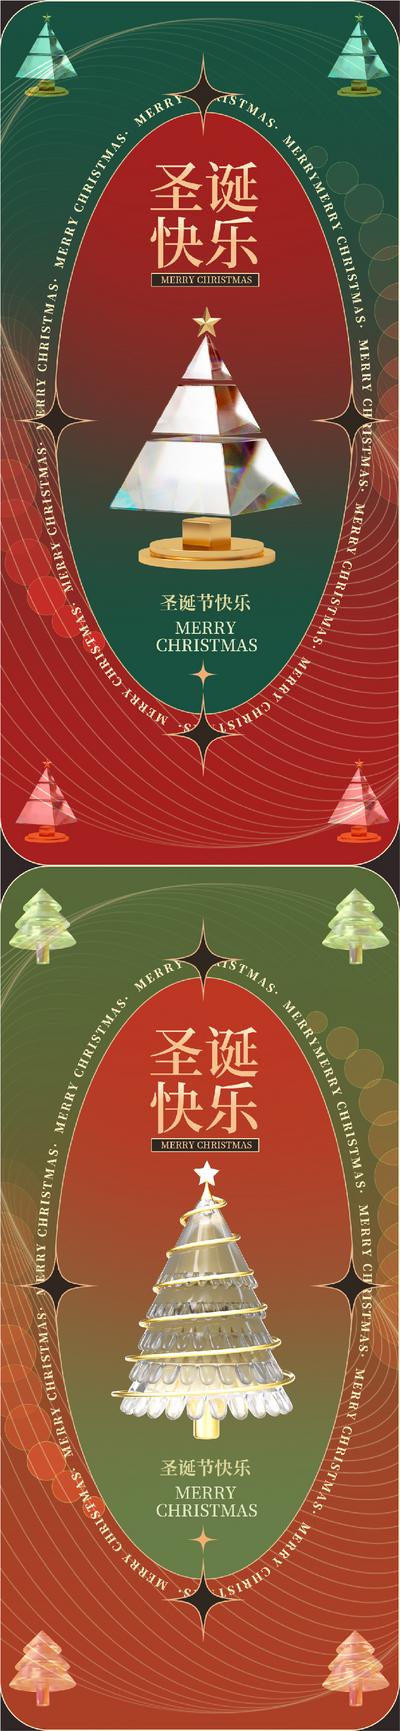 【南门网】海报 医美 公历节日 圣诞节 圣诞树 插画 